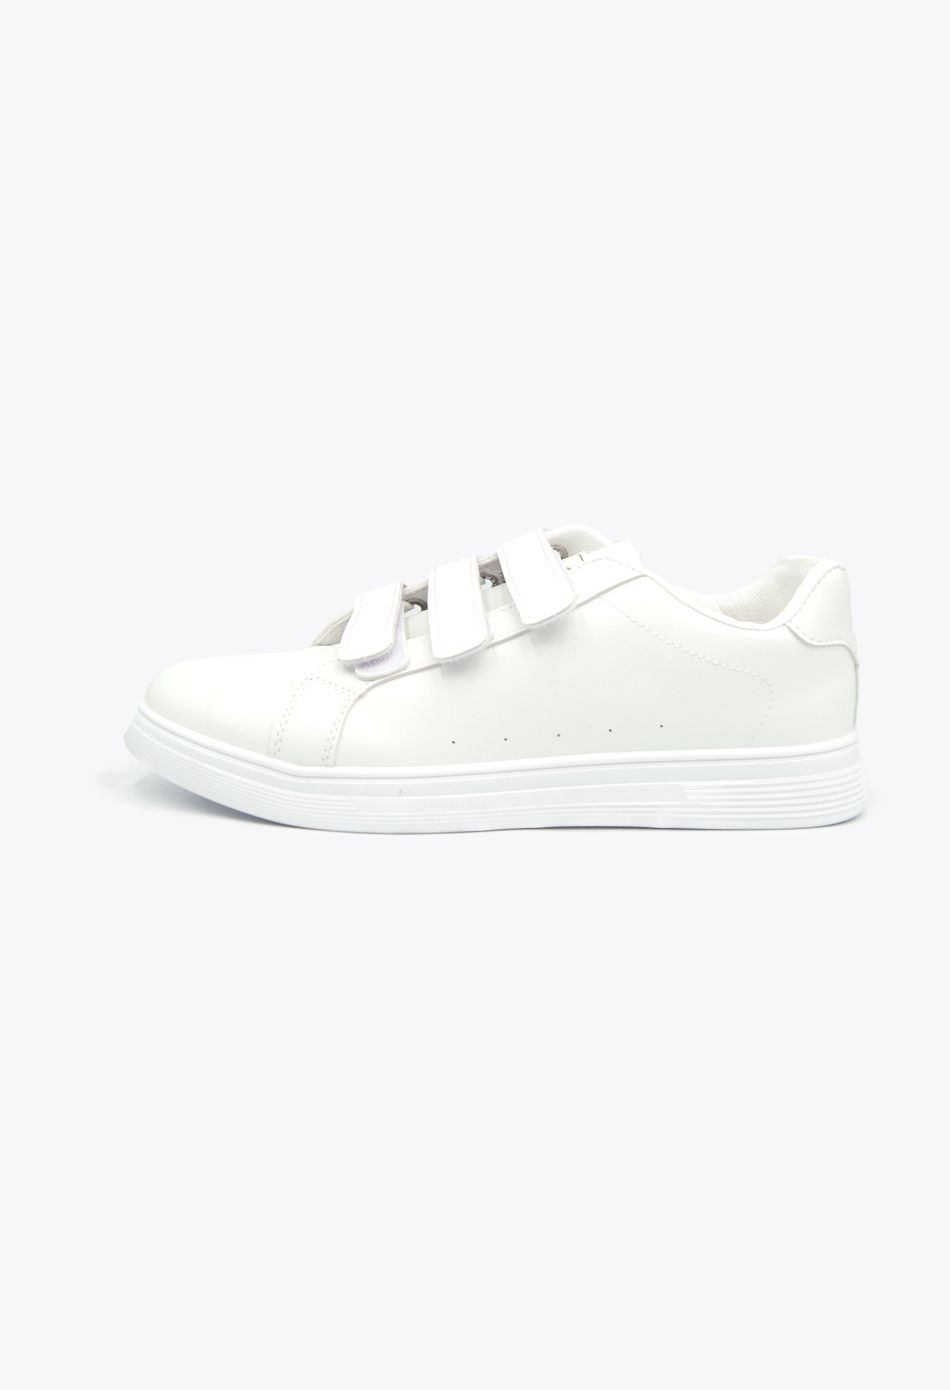 Ανδρικά Casual Sneakers με Scratch Λευκό / A62-white ΑΘΛΗΤΙΚΑ & SNEAKERS joya.gr